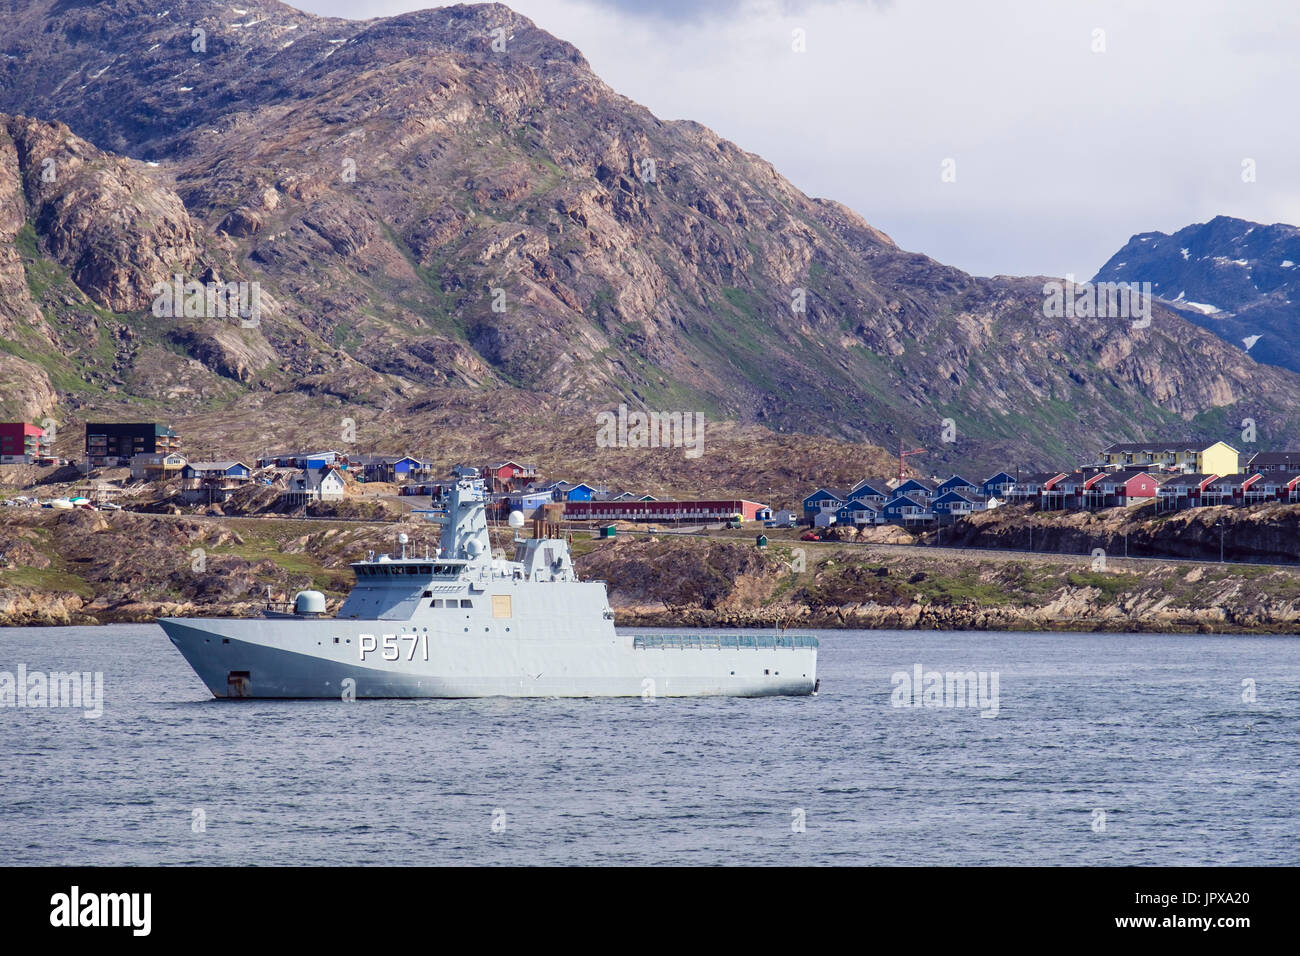 HDMS Ejnar Mikkelsen Royal Danish Navy nave pattuglia di pattugliamento in stretto di Davis sulla costa ovest. Sisimiut, Qeqqata, Groenlandia occidentale Foto Stock